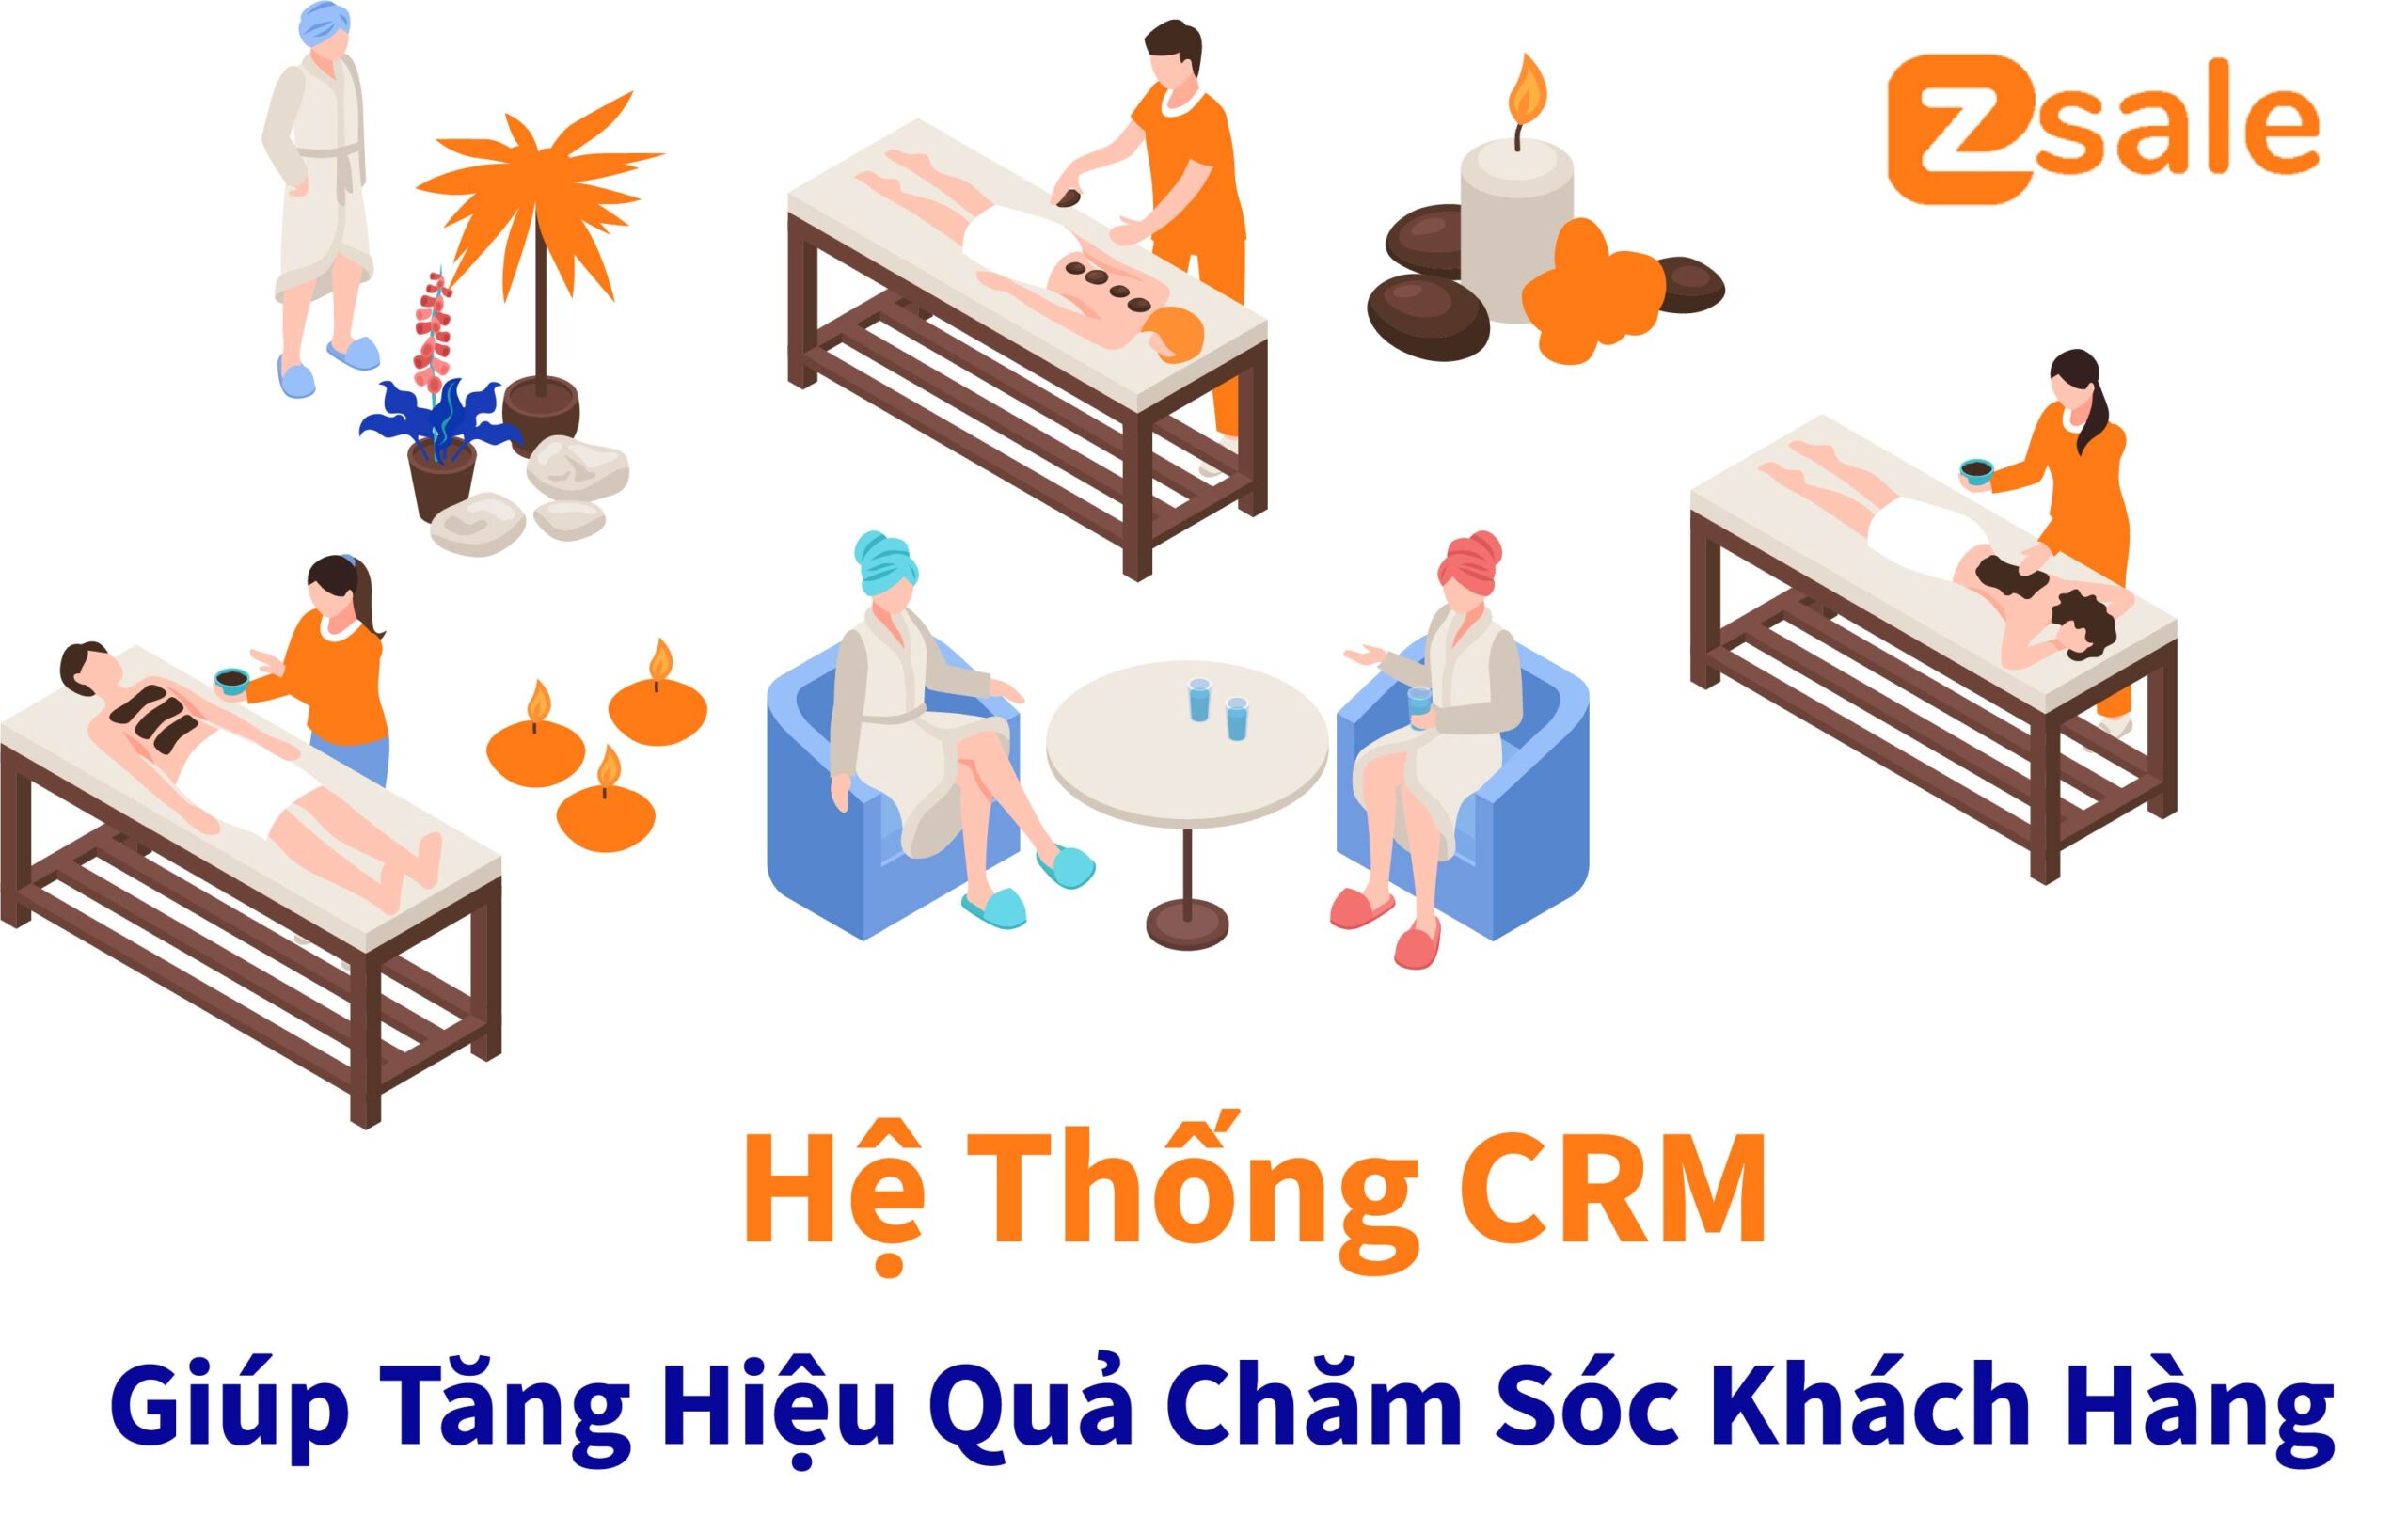 CRM Cho Spa giúp tăng hiệu quả chăm sóc khách hàng